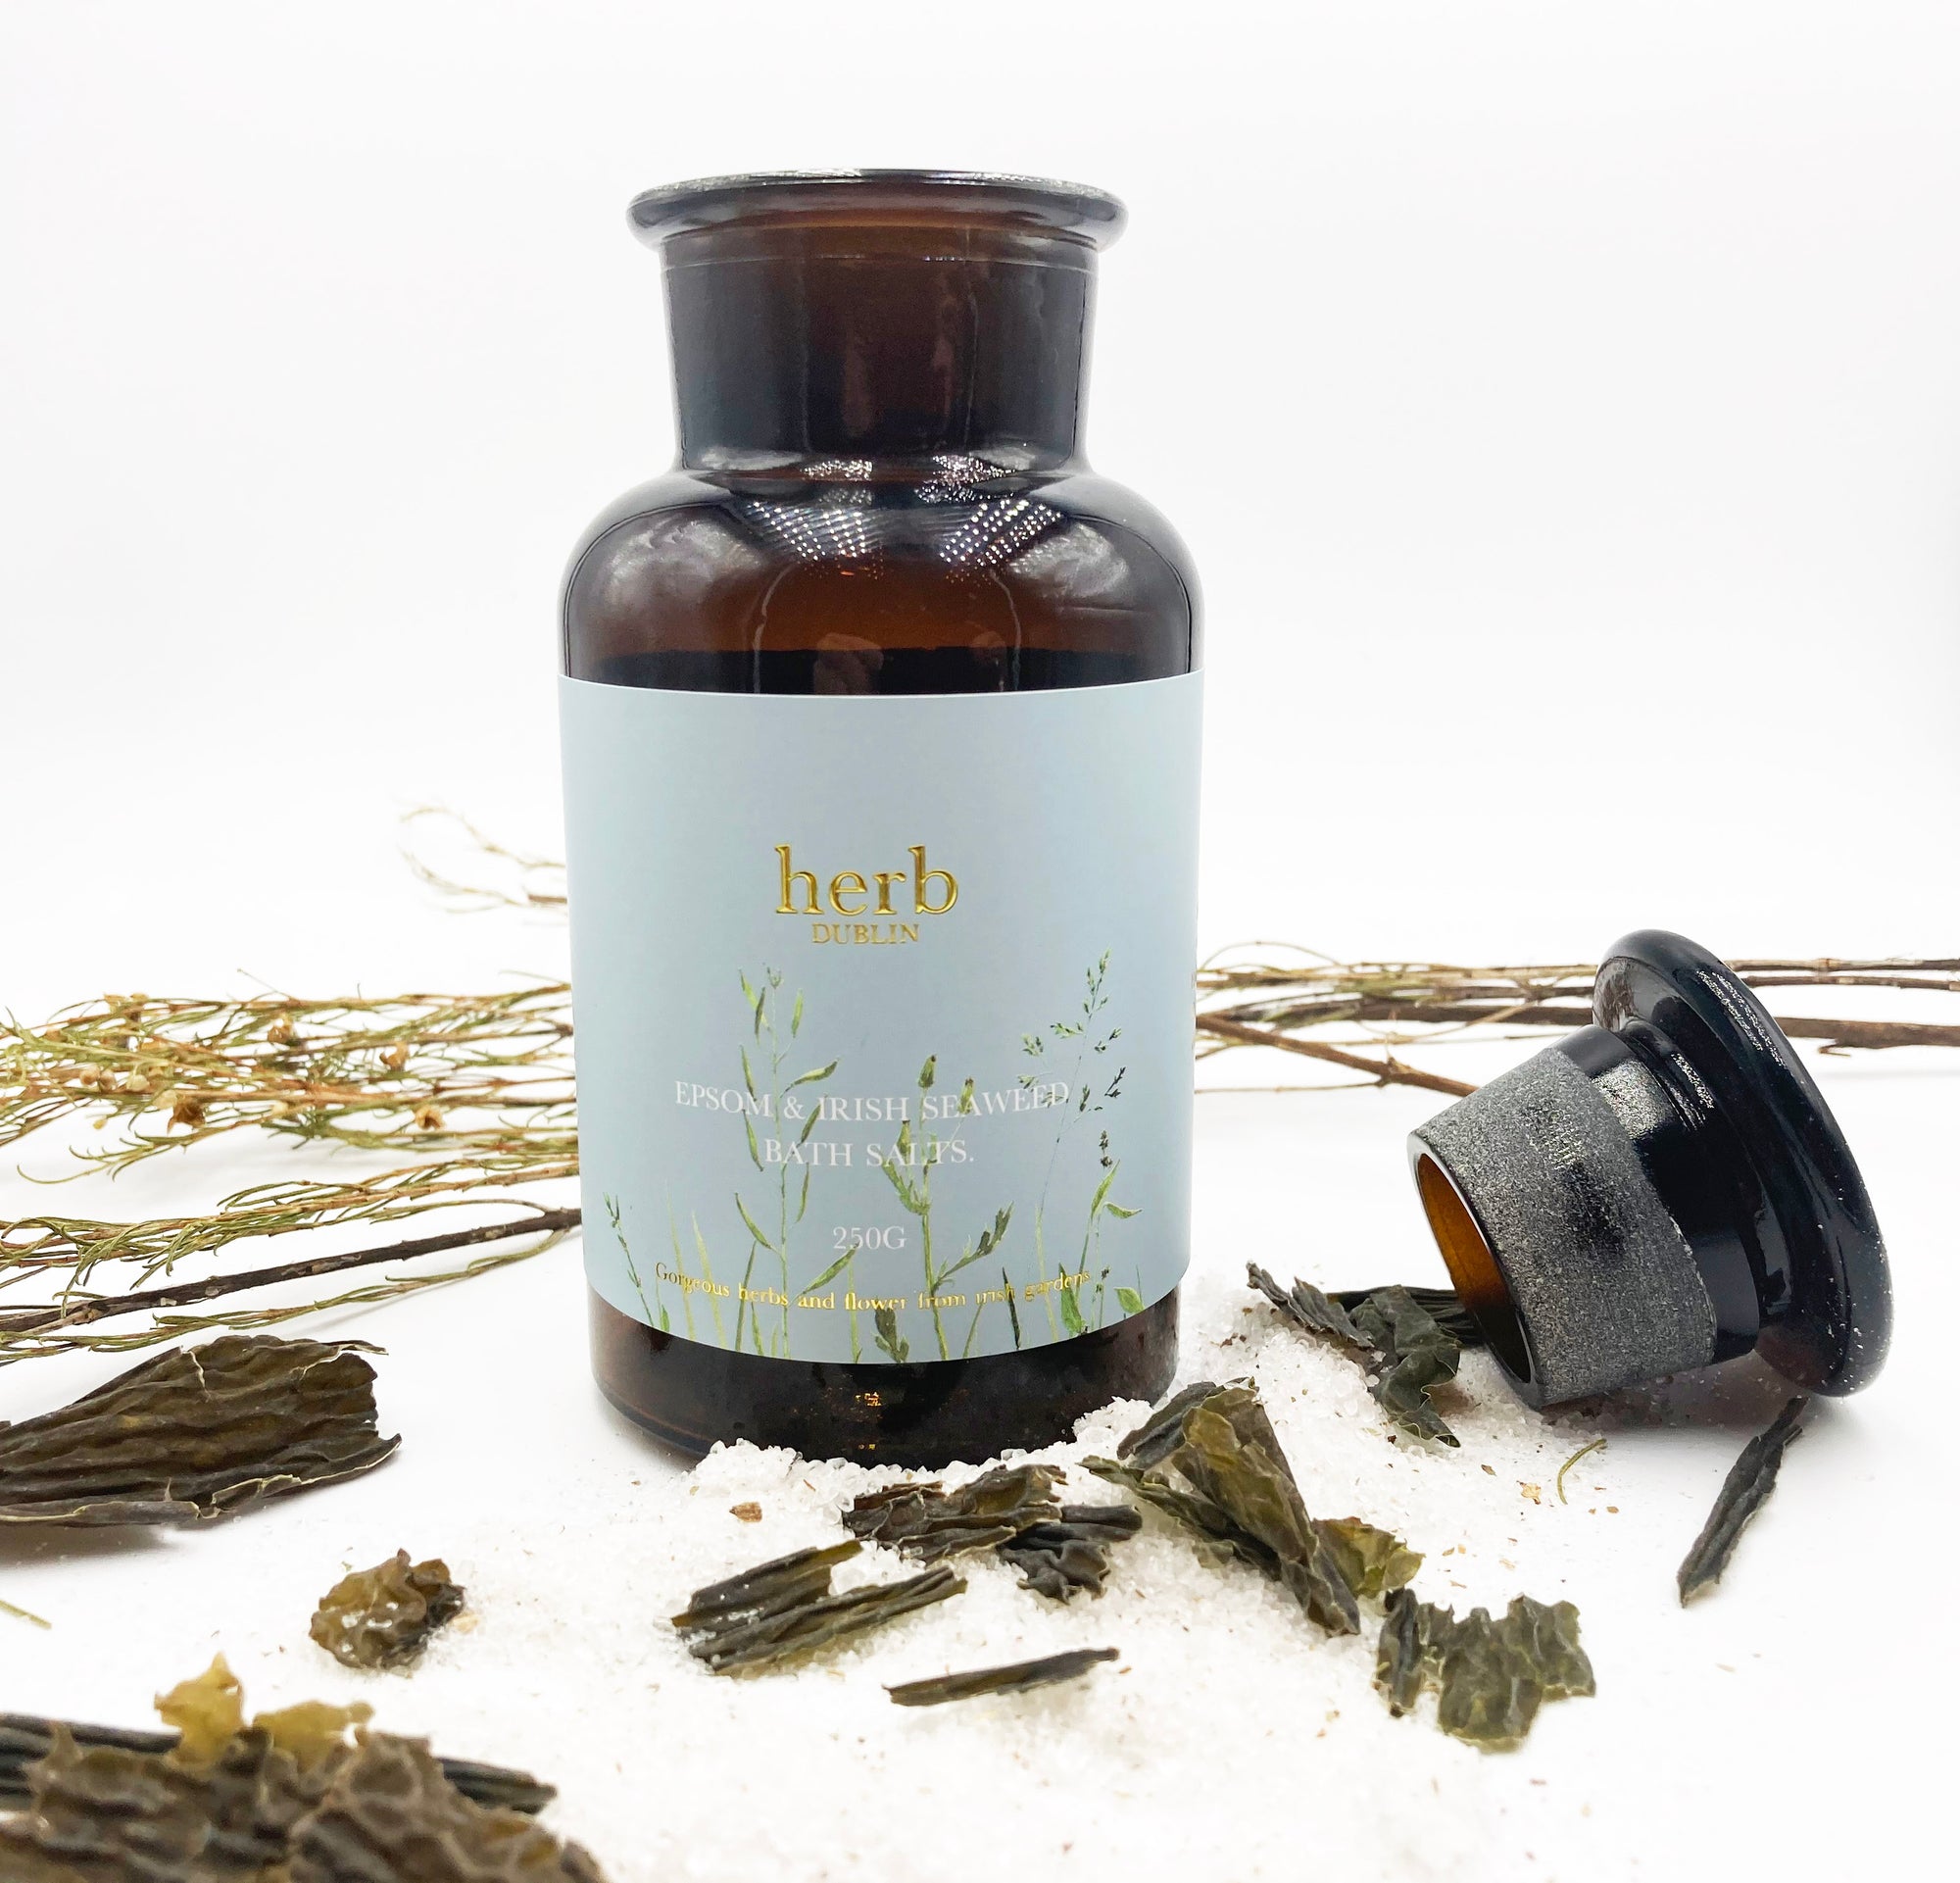 Herb Dublin Epsom and Irish Seaweed Healing Bath Salts